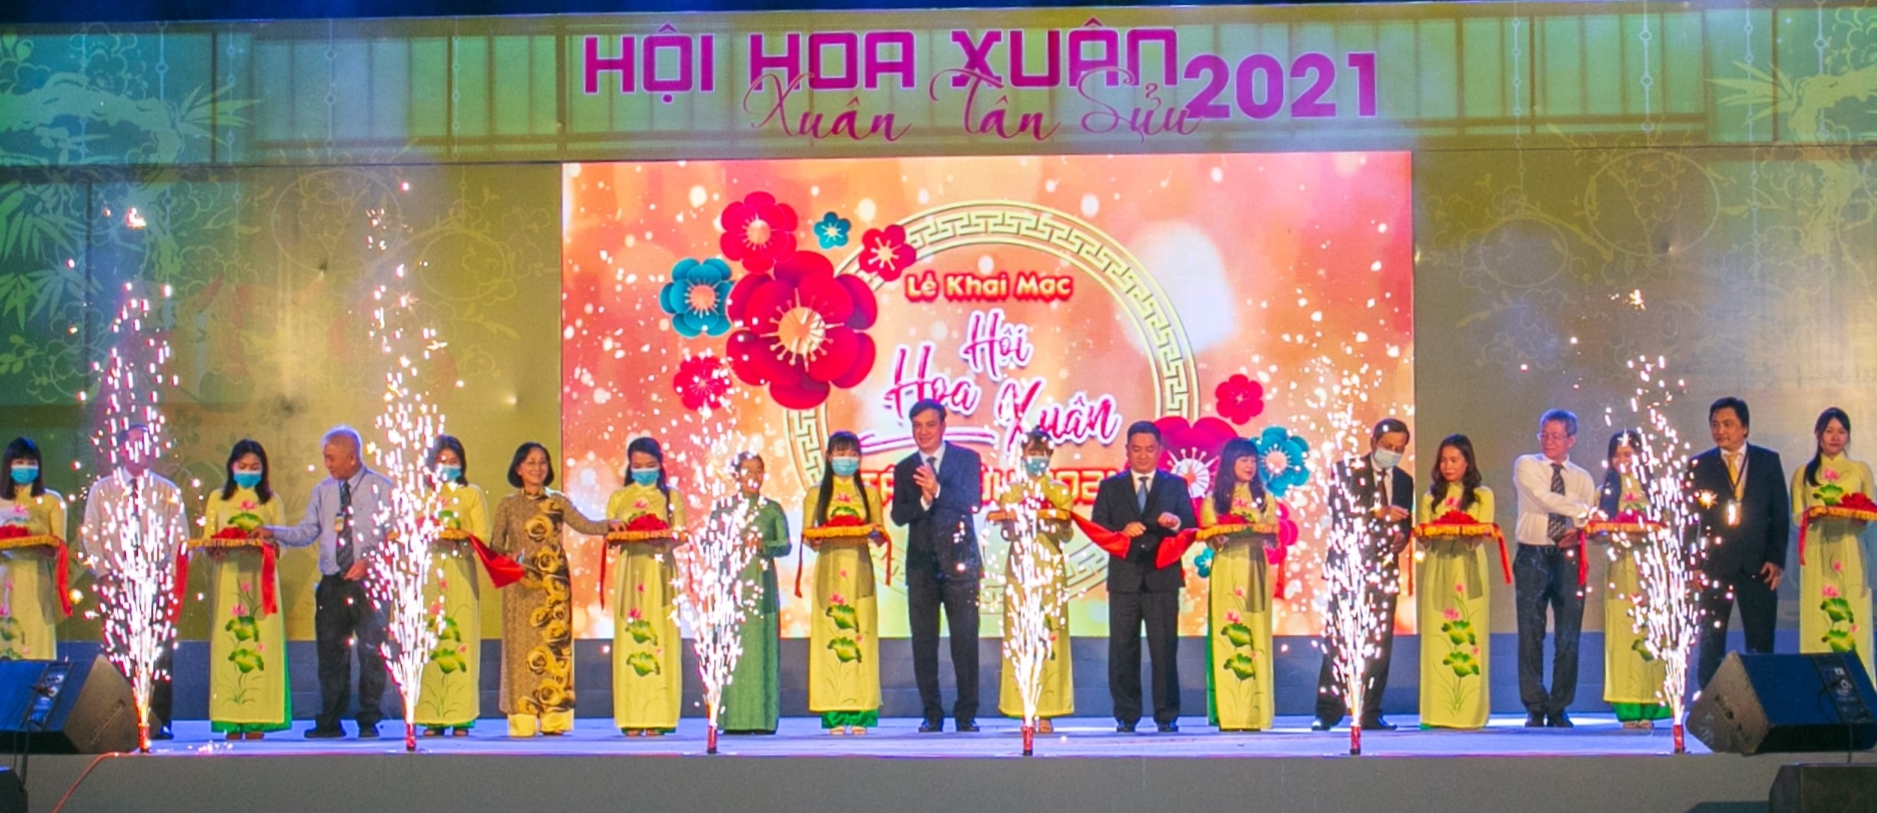 Khai mạc Hội hoa xuân Tết Tân Sửu năm 2021